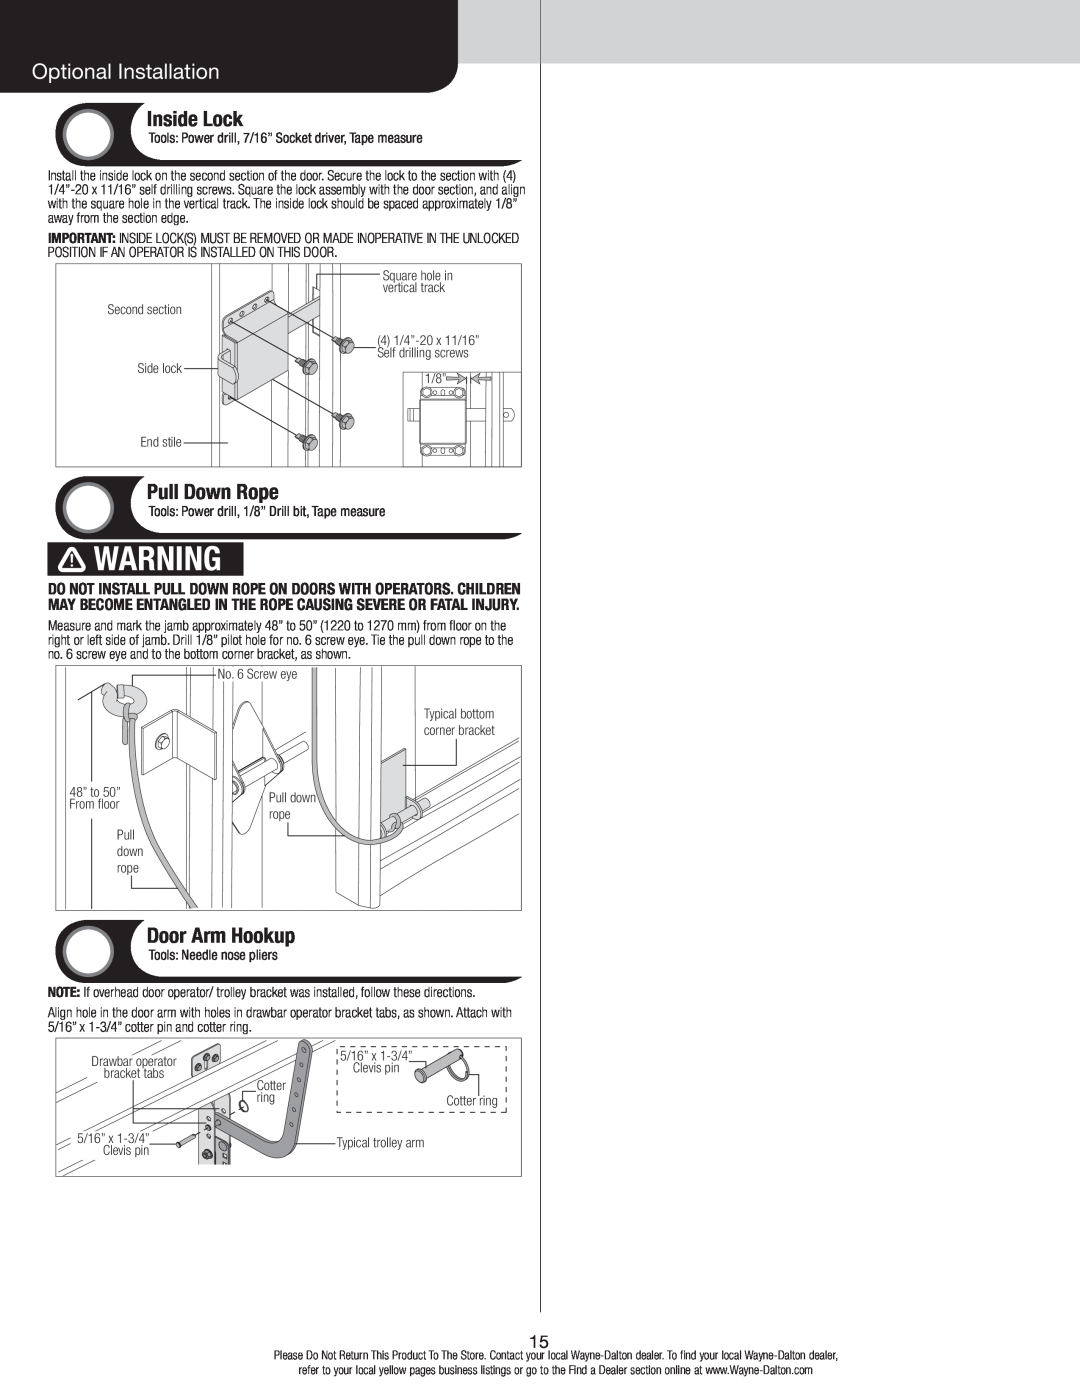 Wayne-Dalton 8700 installation instructions Optional Installation, Inside Lock, Pull Down Rope, Door Arm Hookup 